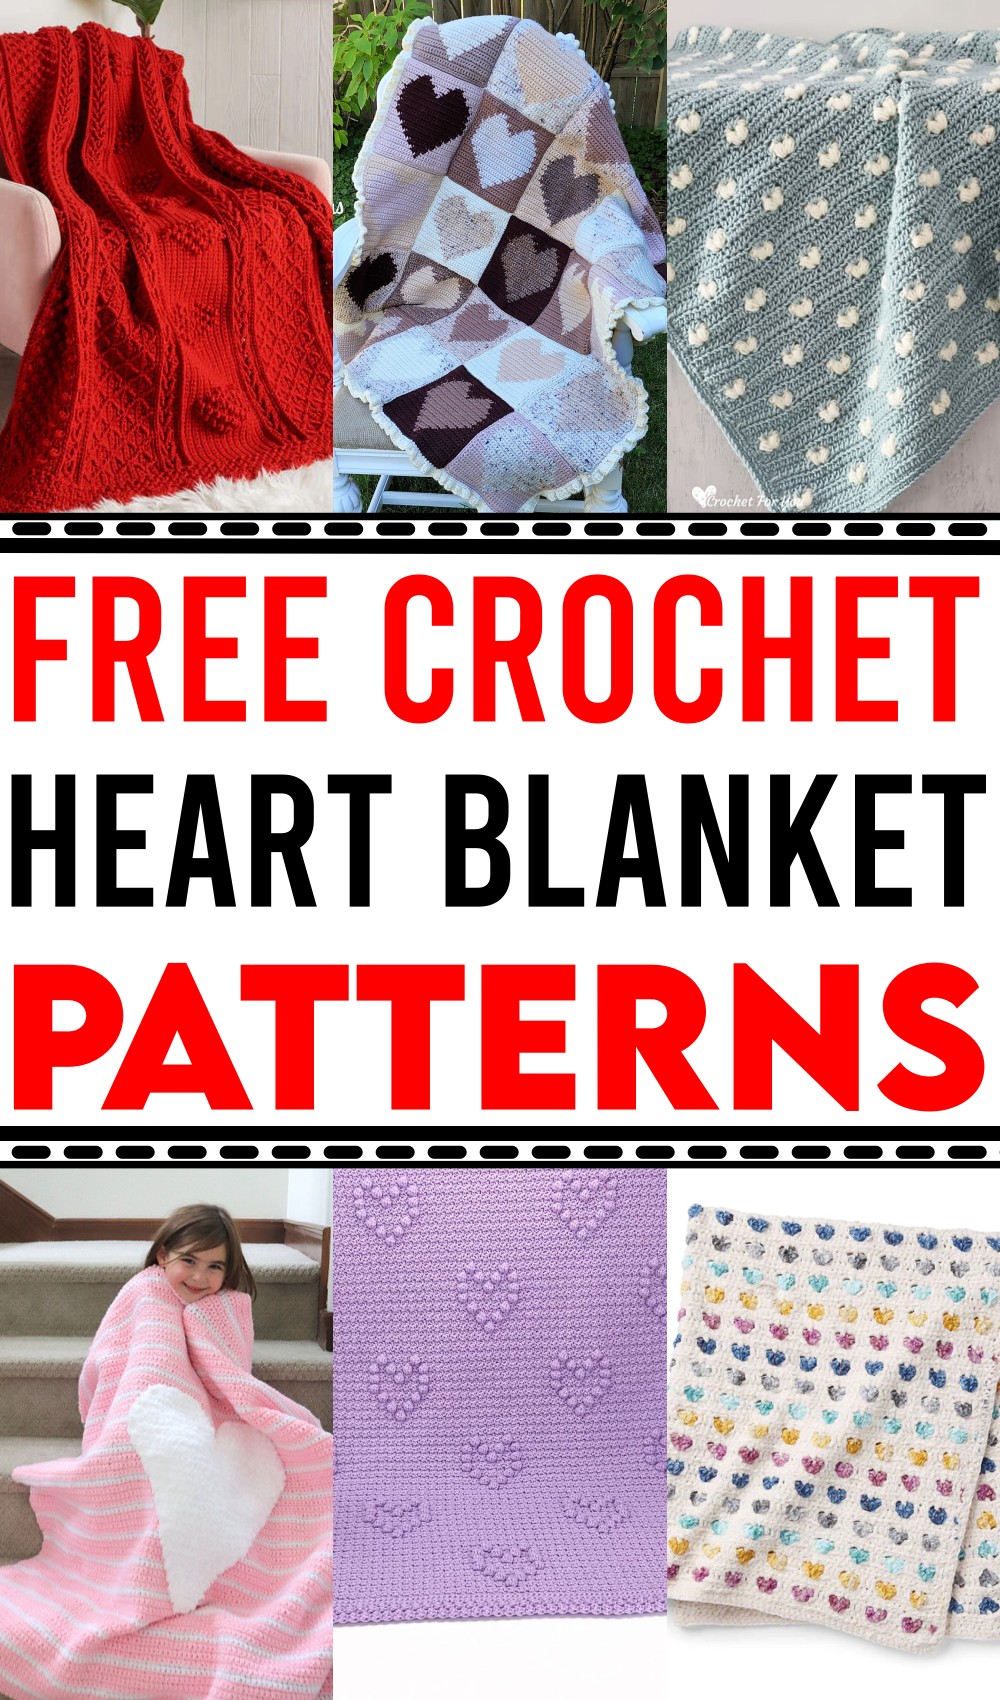 Crochet Heart Blanket Patterns 1